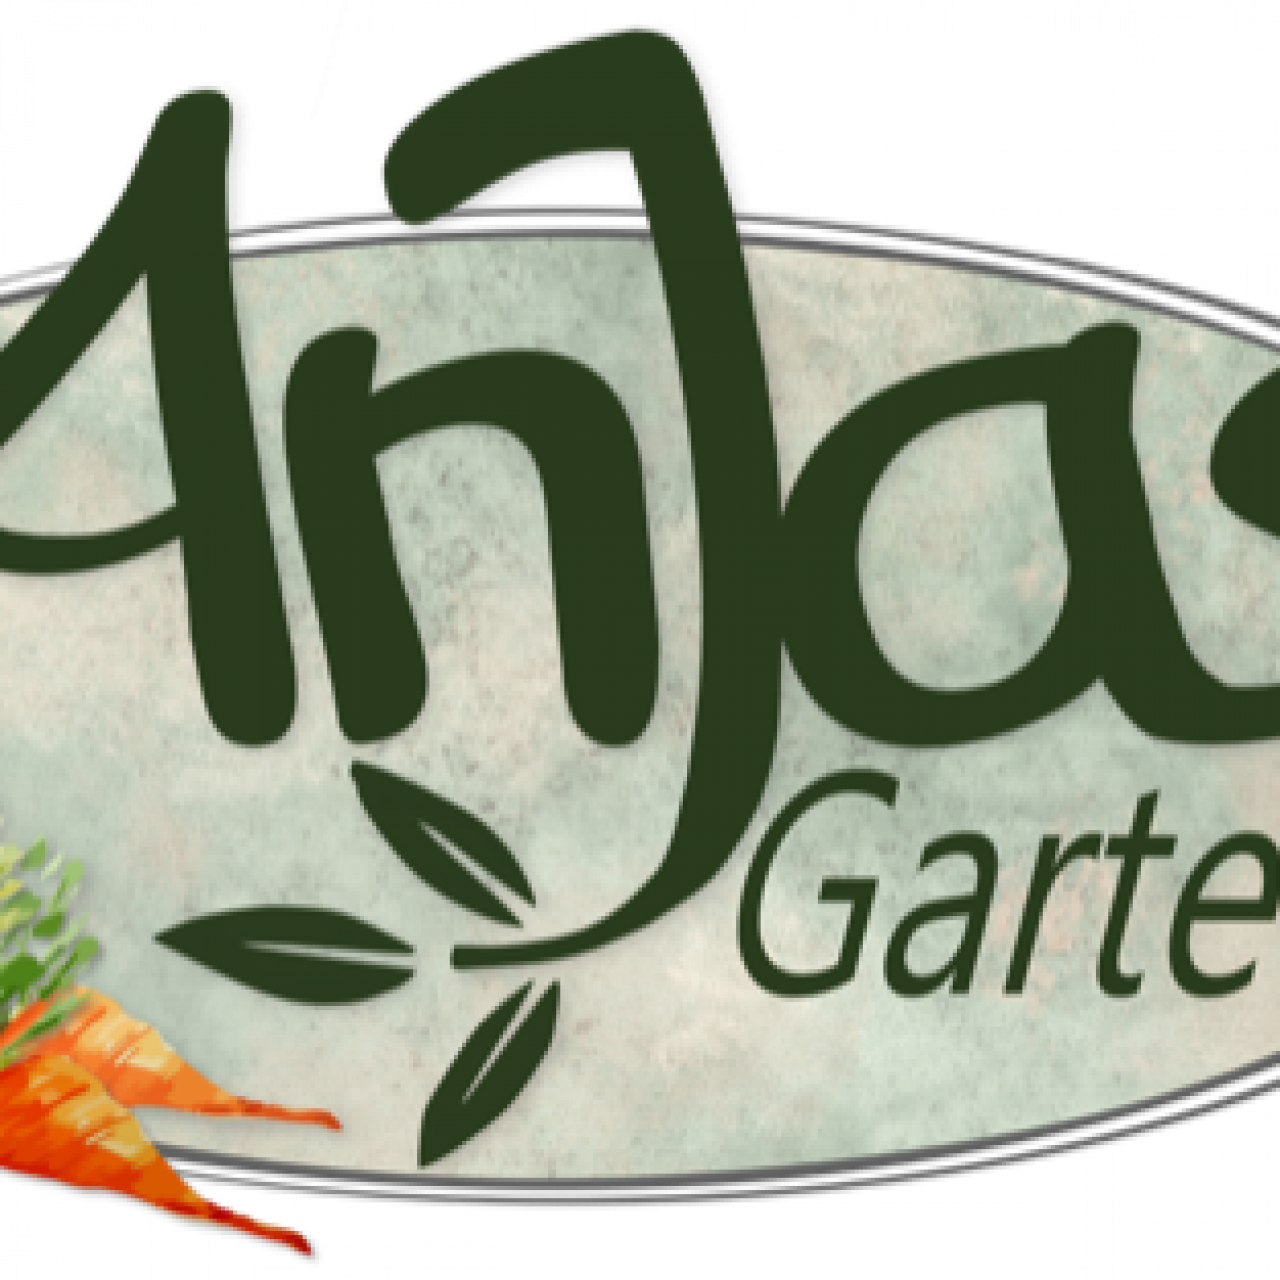 anjas-garten-logo-1280x1280-crop-50-50.png